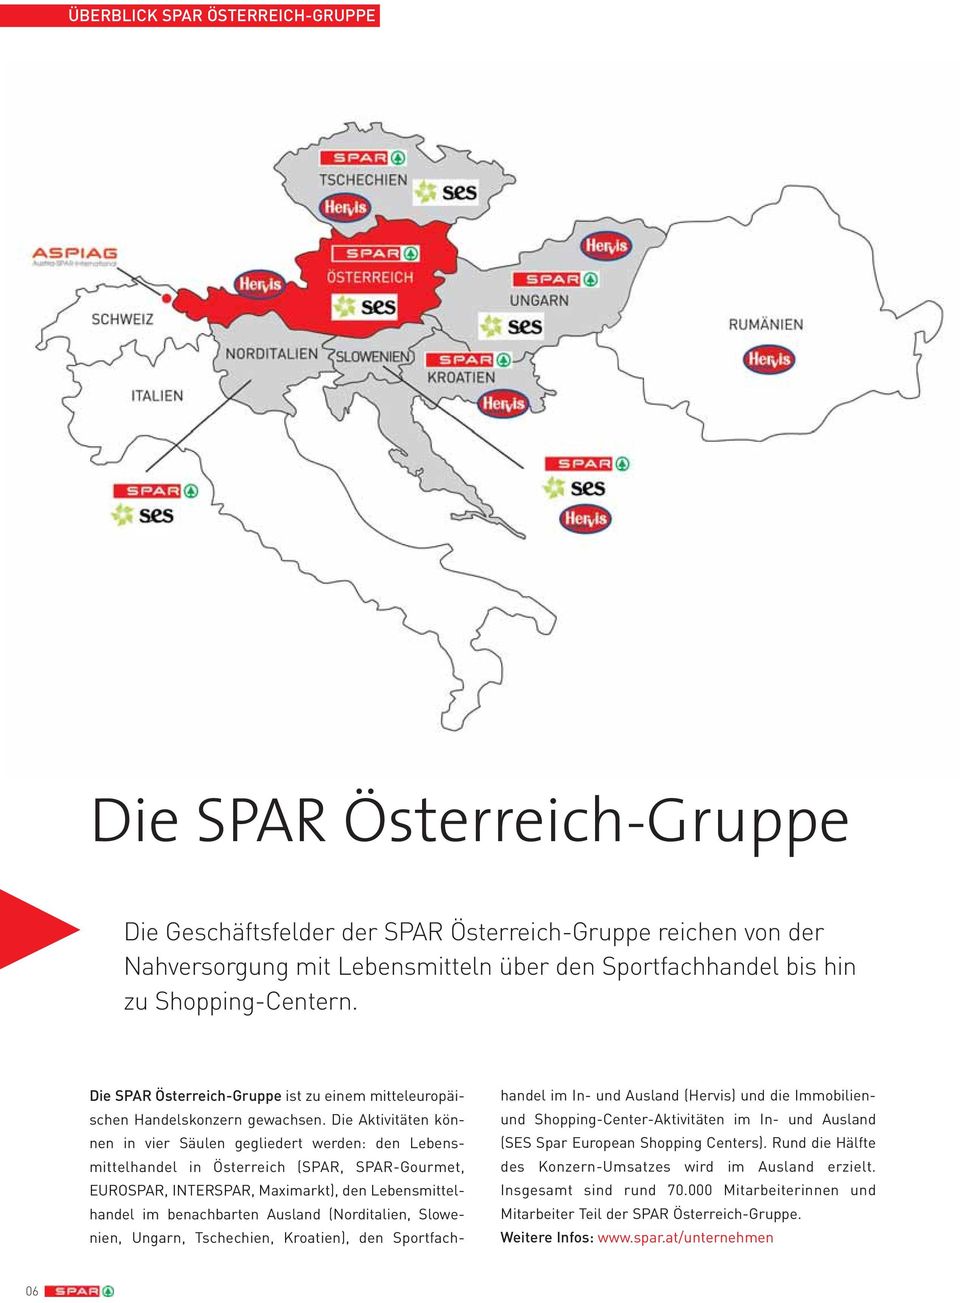 Die Aktivitäten können in vier Säulen gegliedert werden: den Lebensmittelhandel in Österreich (SPAR, SPAR-Gourmet, EUROSPAR, INTERSPAR, Maximarkt), den Lebensmittelhandel im benachbarten Ausland